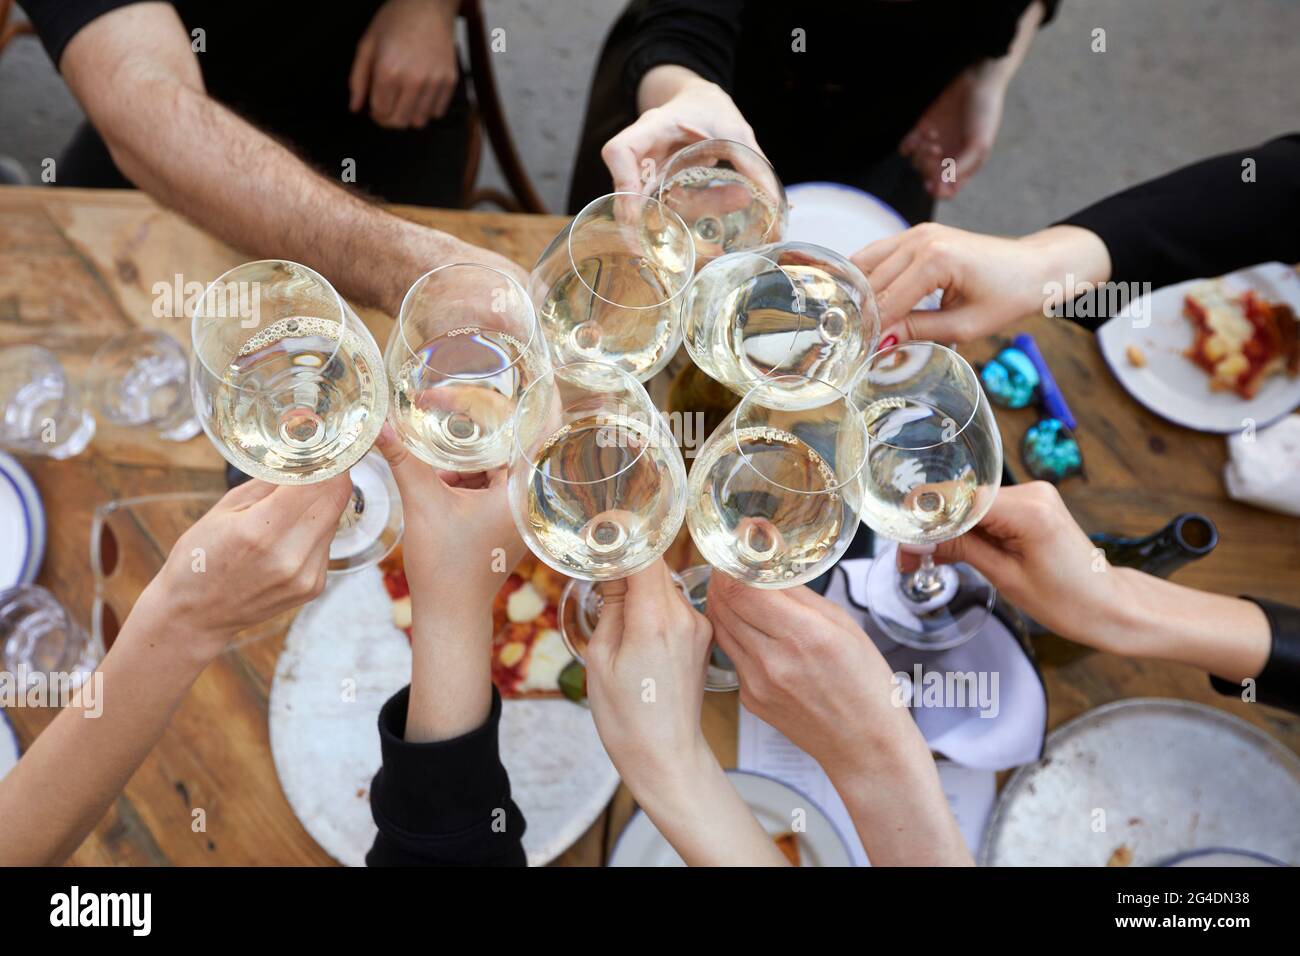 Dall'alto del gruppo di persone anonime raccolto che si riuniscono intorno al tavolo con pizza e bicchieri da clinking con vino bianco durante la festa Foto Stock